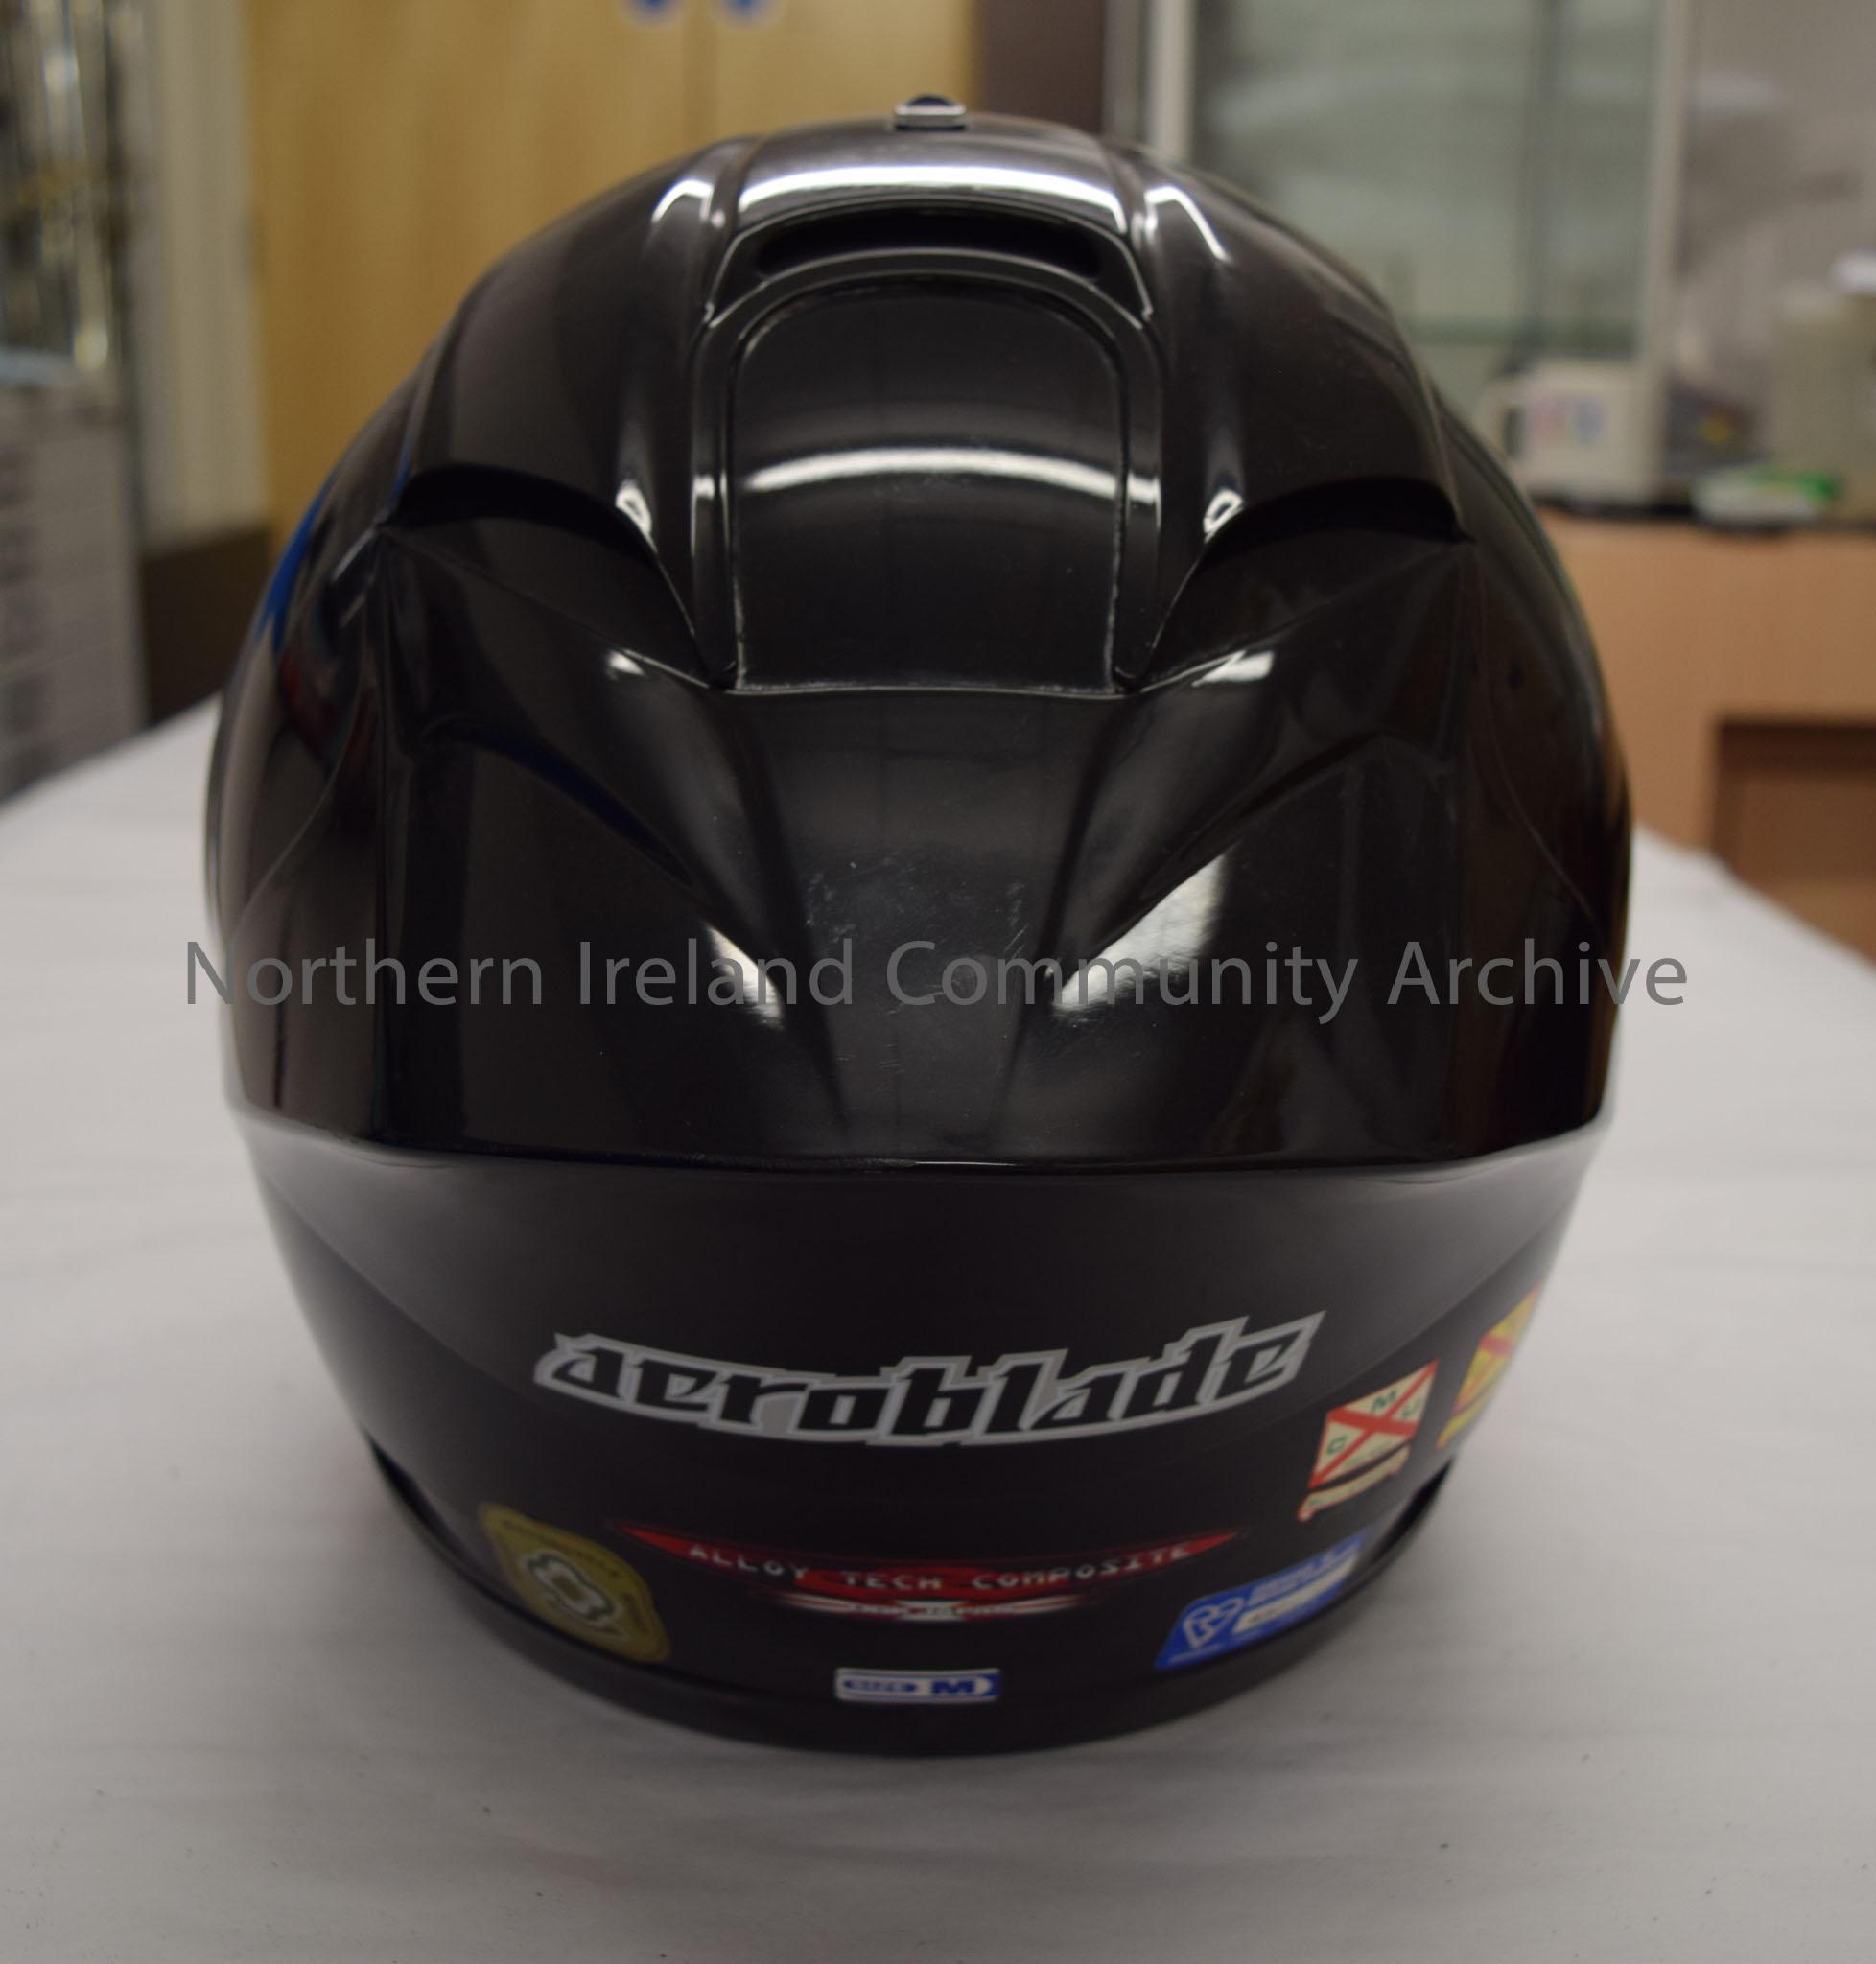 OGK helmet belonging to Ben Smith. Plain black. – 2016.34 (4)